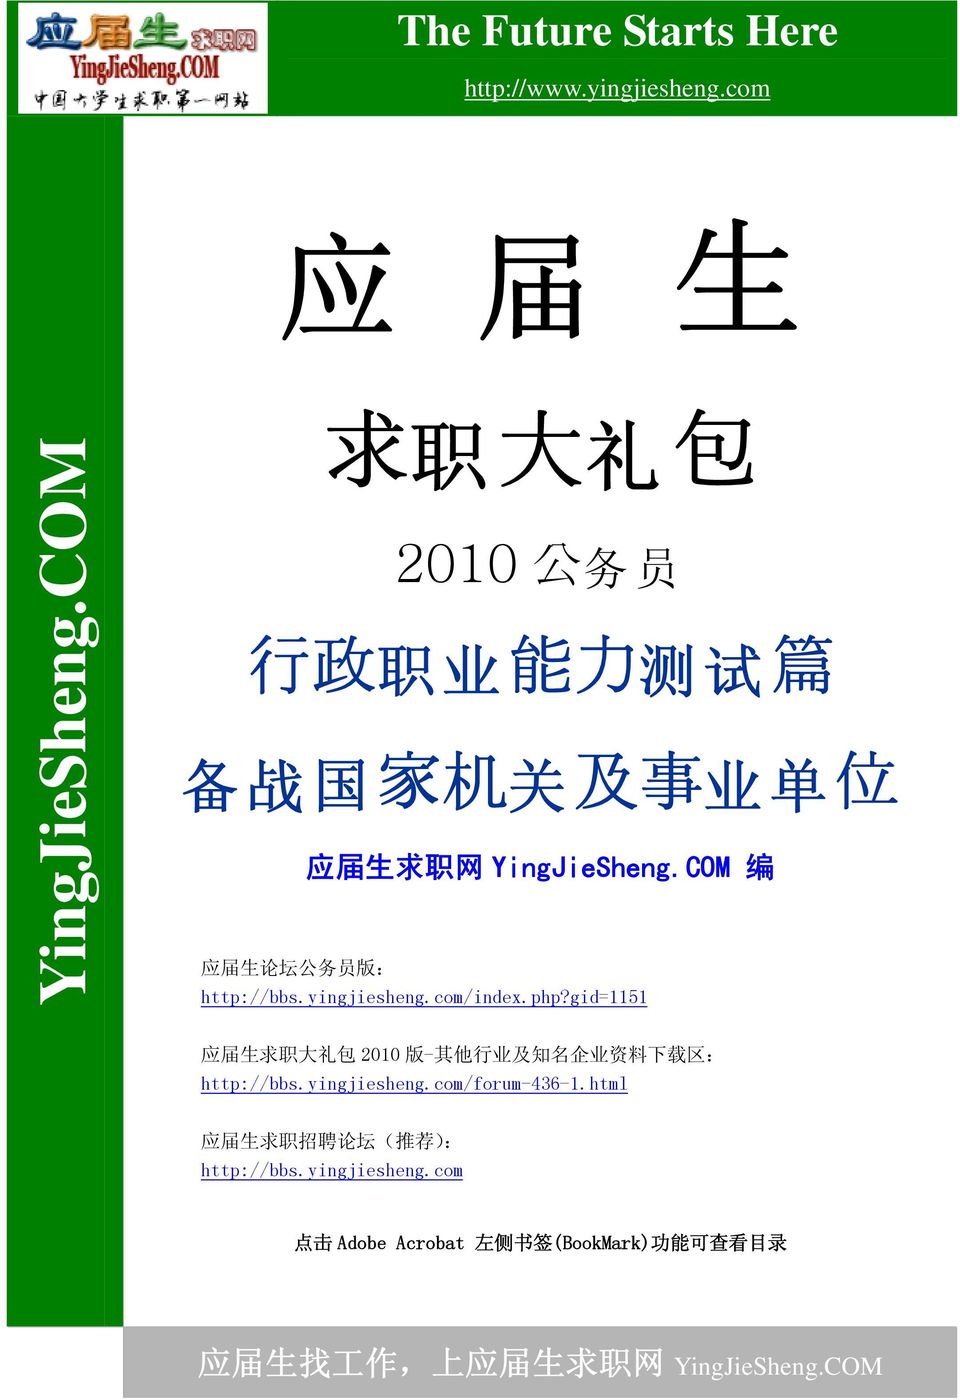 yingjiesheng.com/index.php?gid=1151 应 届 生 求 职 大 礼 包 2010 版 - 其 他 行 业 及 知 名 企 业 资 料 下 载 区 : http://bbs.